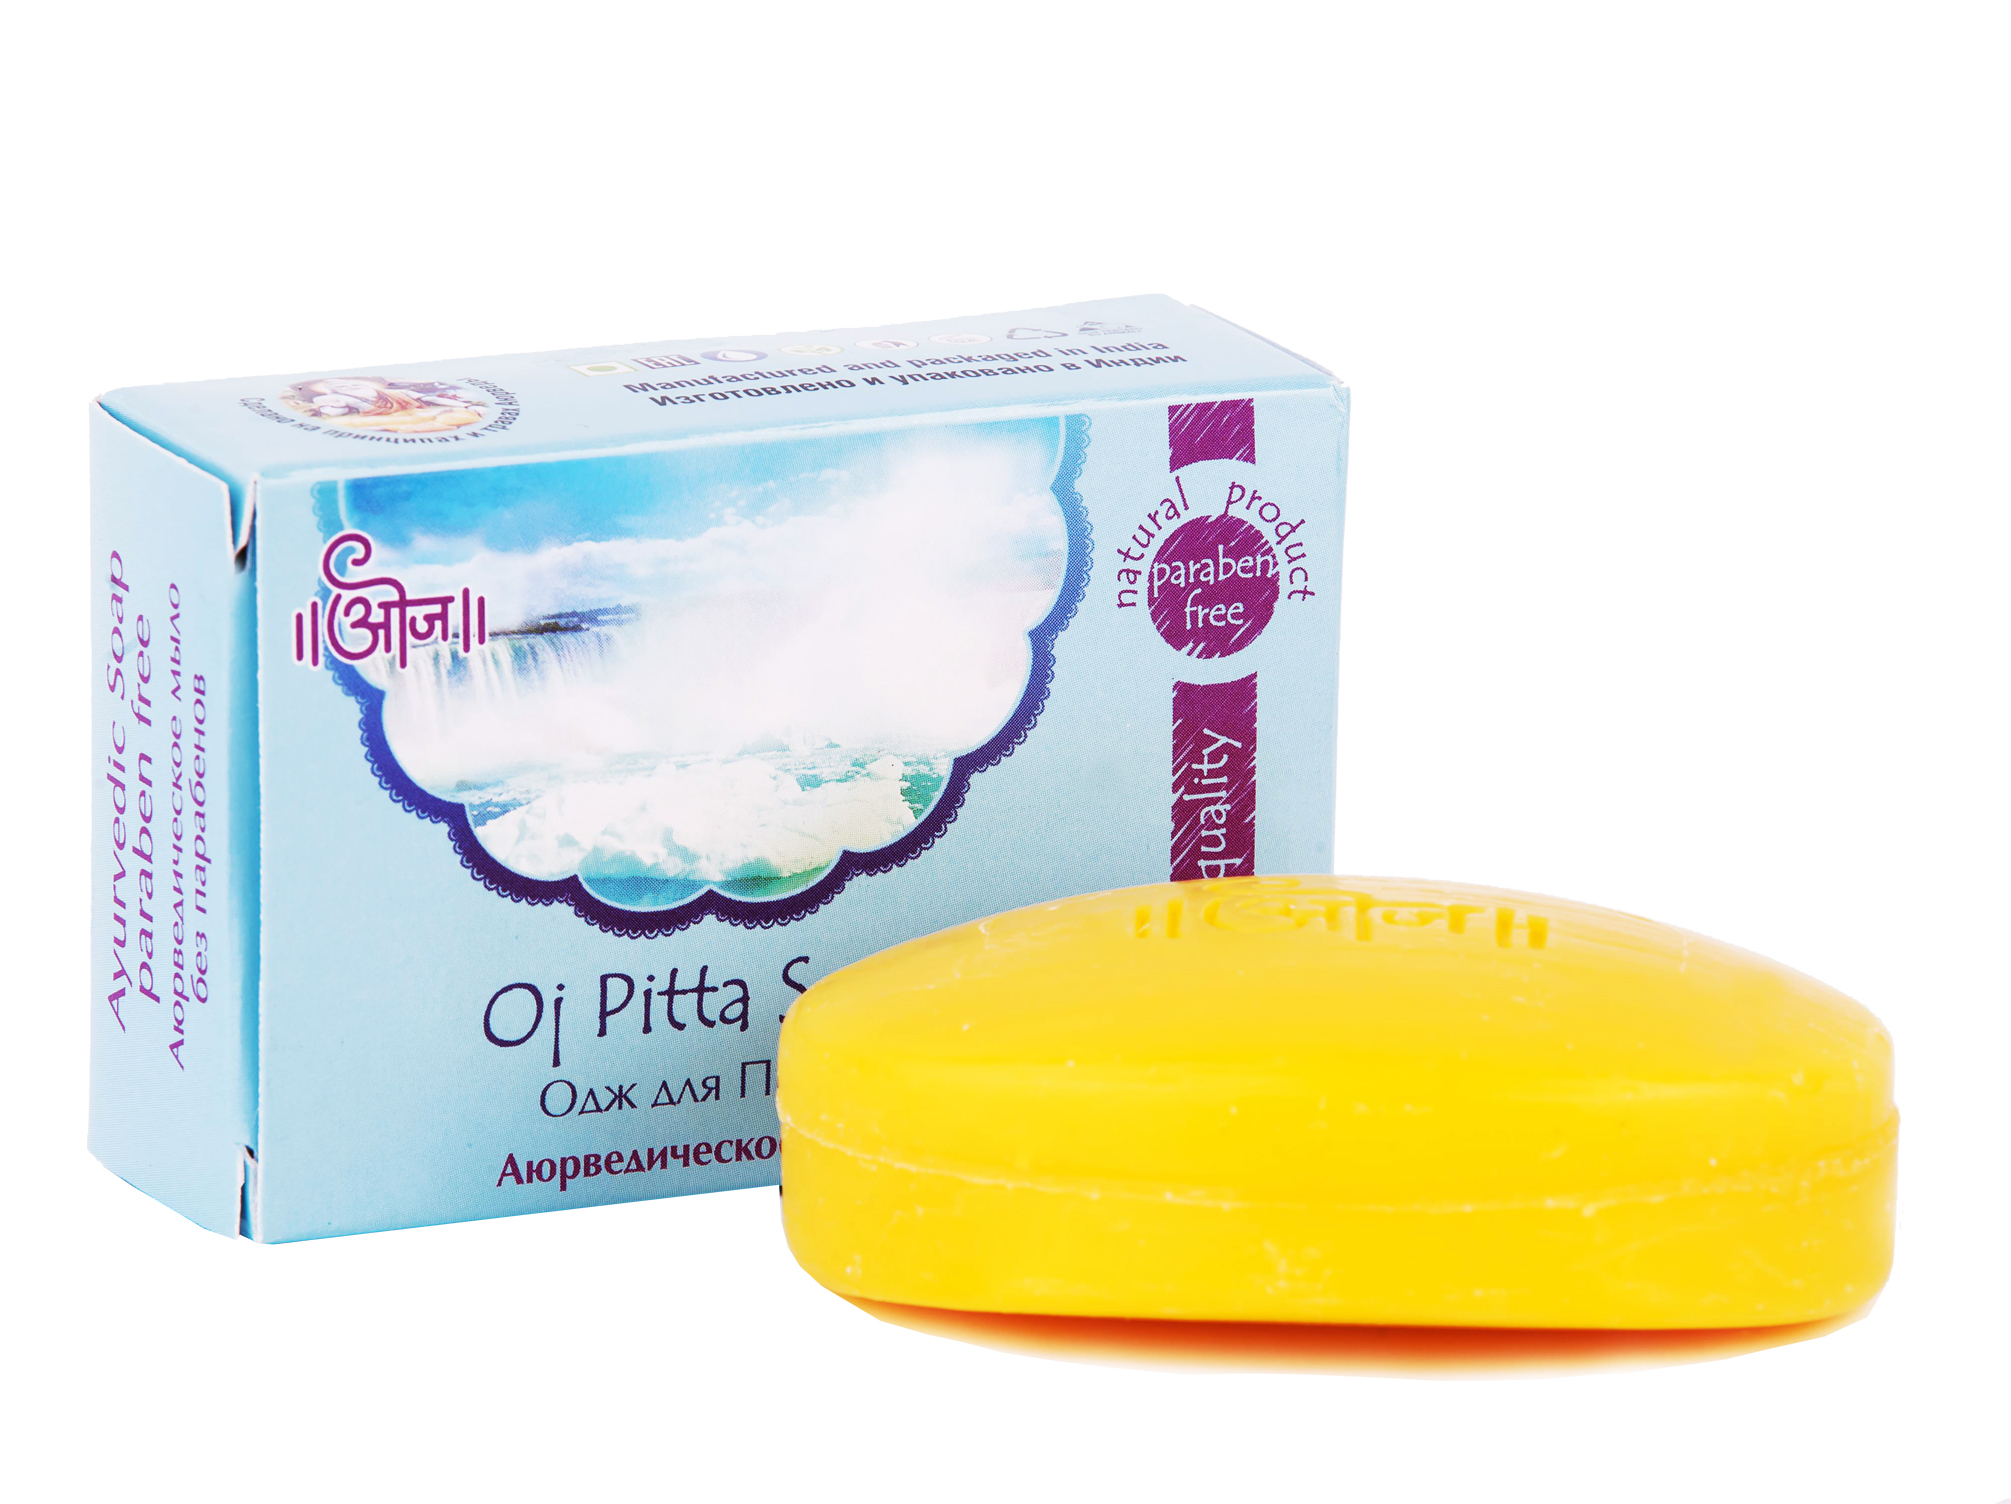 Аюрведическое мыло Одж для Питты, обогащенное аюрведическими маслами 100гр (Oj Pitta Soap)